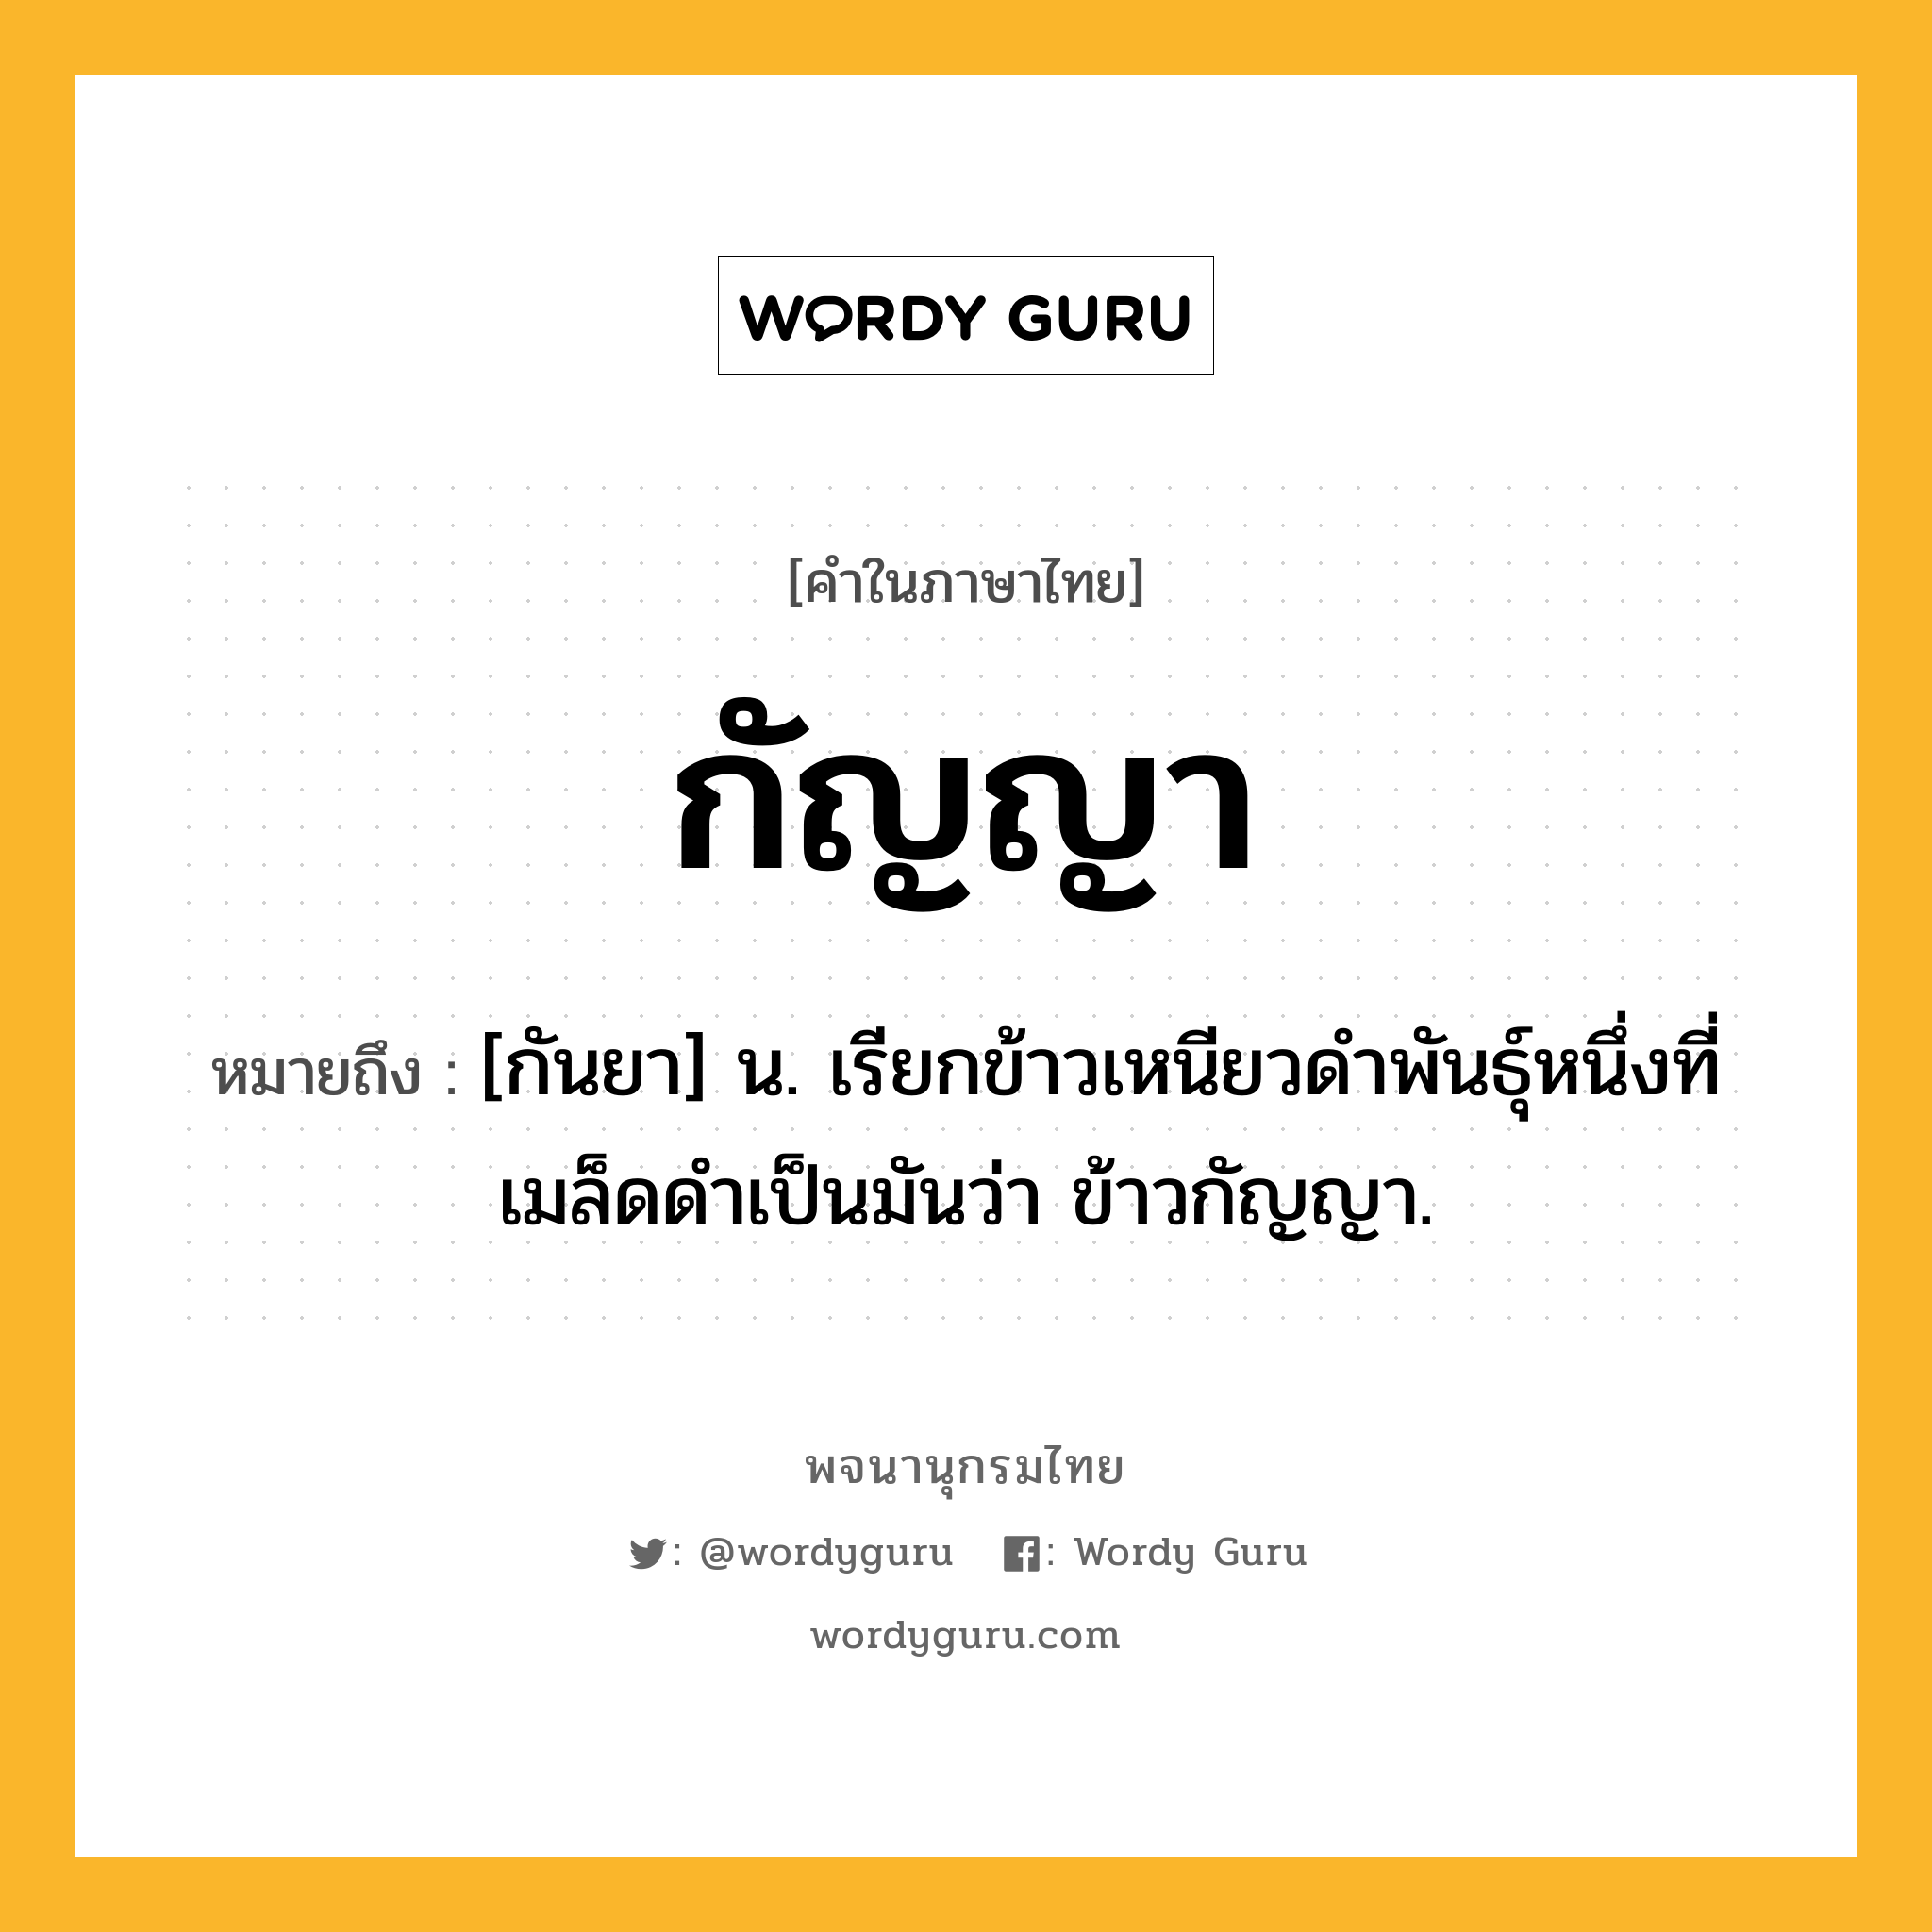 กัญญา ความหมาย หมายถึงอะไร?, คำในภาษาไทย กัญญา หมายถึง [กันยา] น. เรียกข้าวเหนียวดําพันธุ์หนึ่งที่เมล็ดดําเป็นมันว่า ข้าวกัญญา.